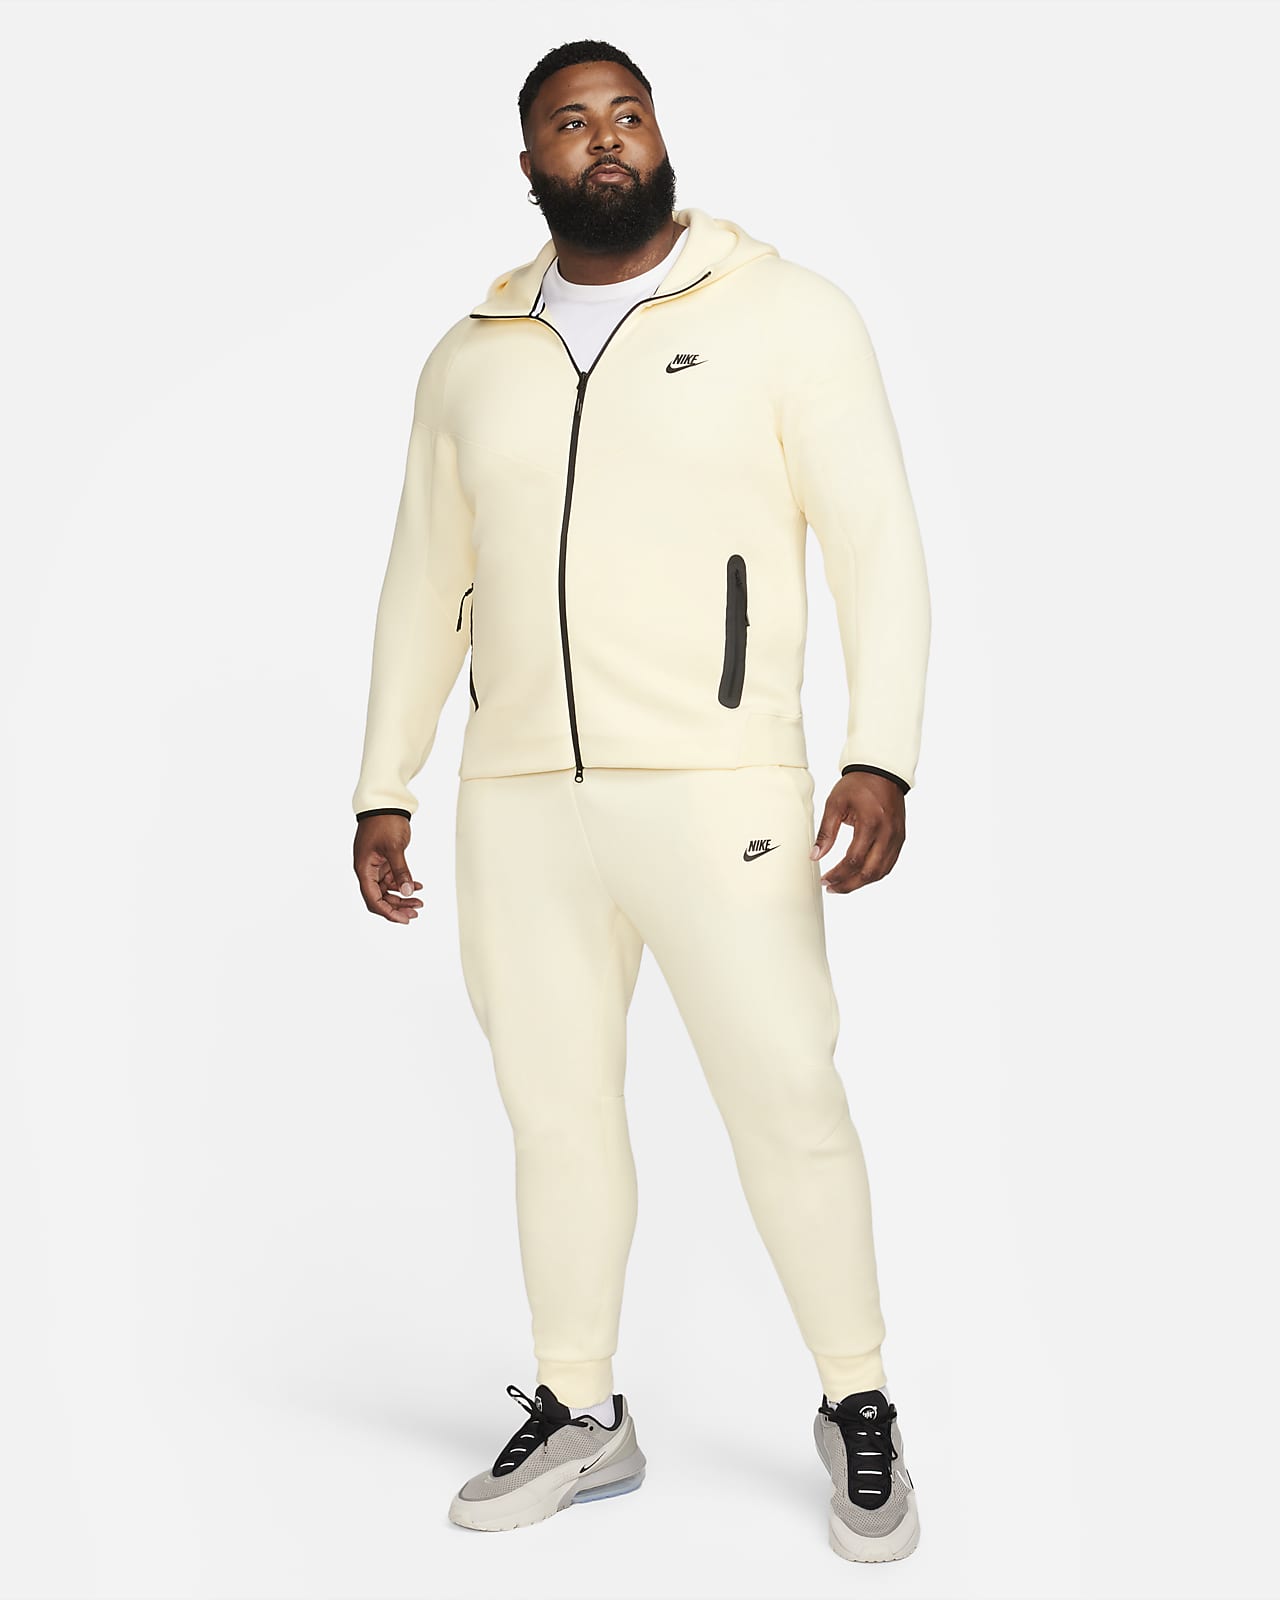 Nike Men's Sportswear Tech Fleece Black/Grey Full-Zip Hoodie